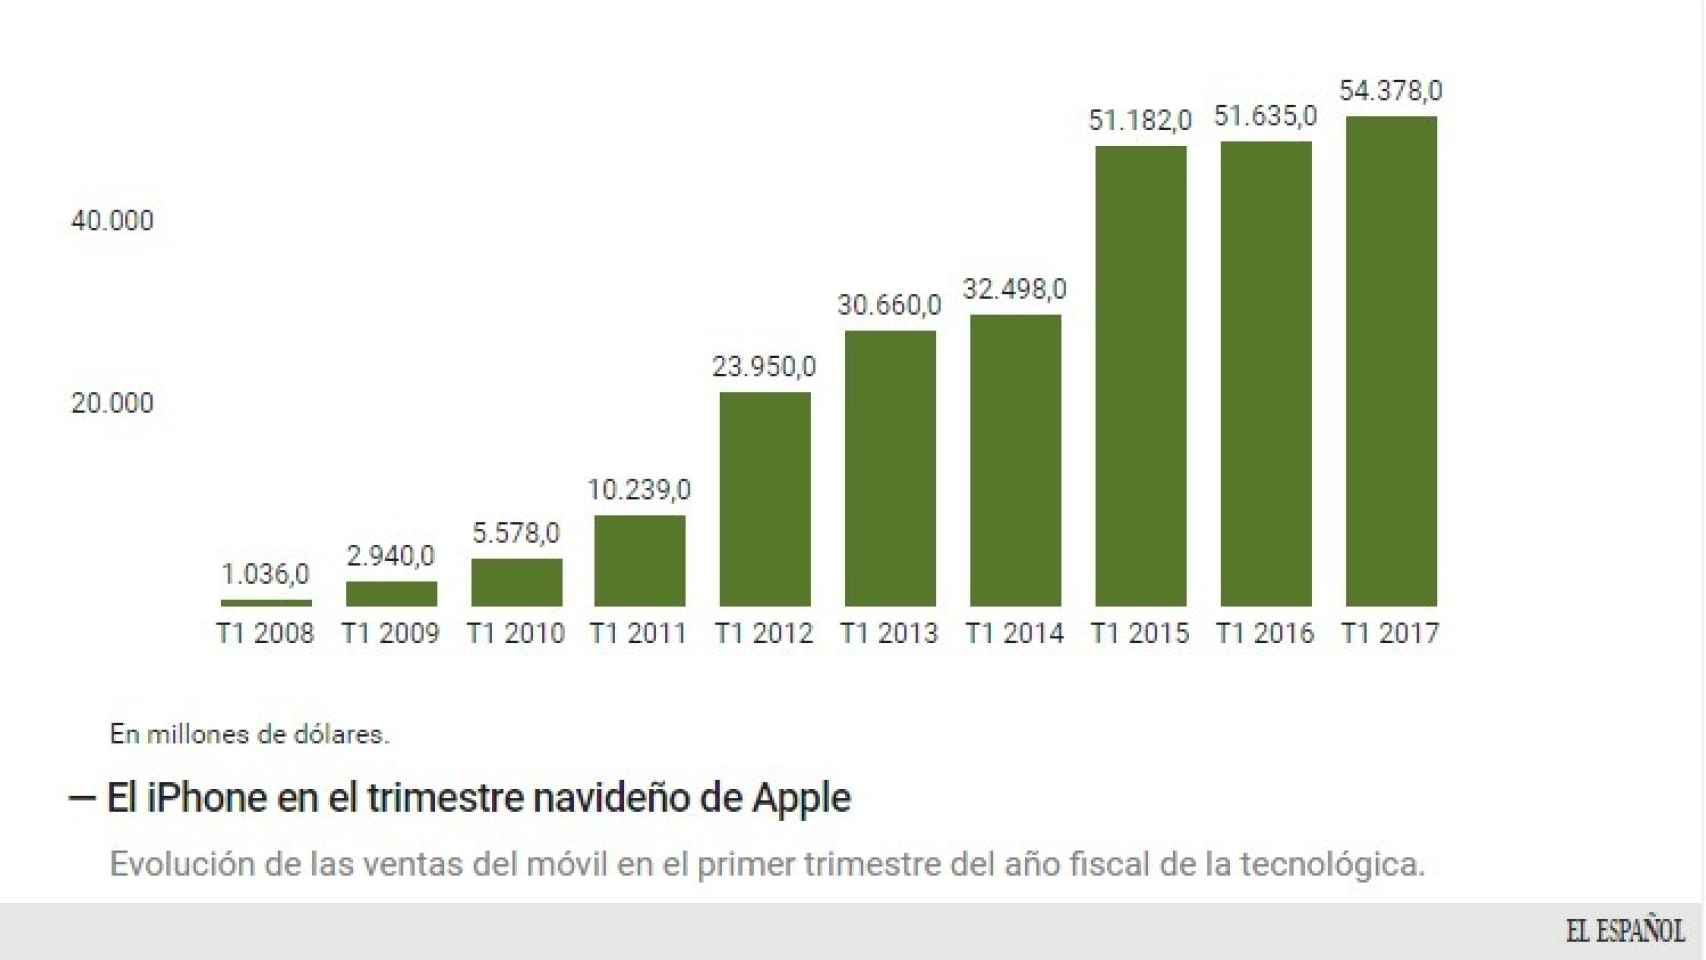 El iPhone en ventas.